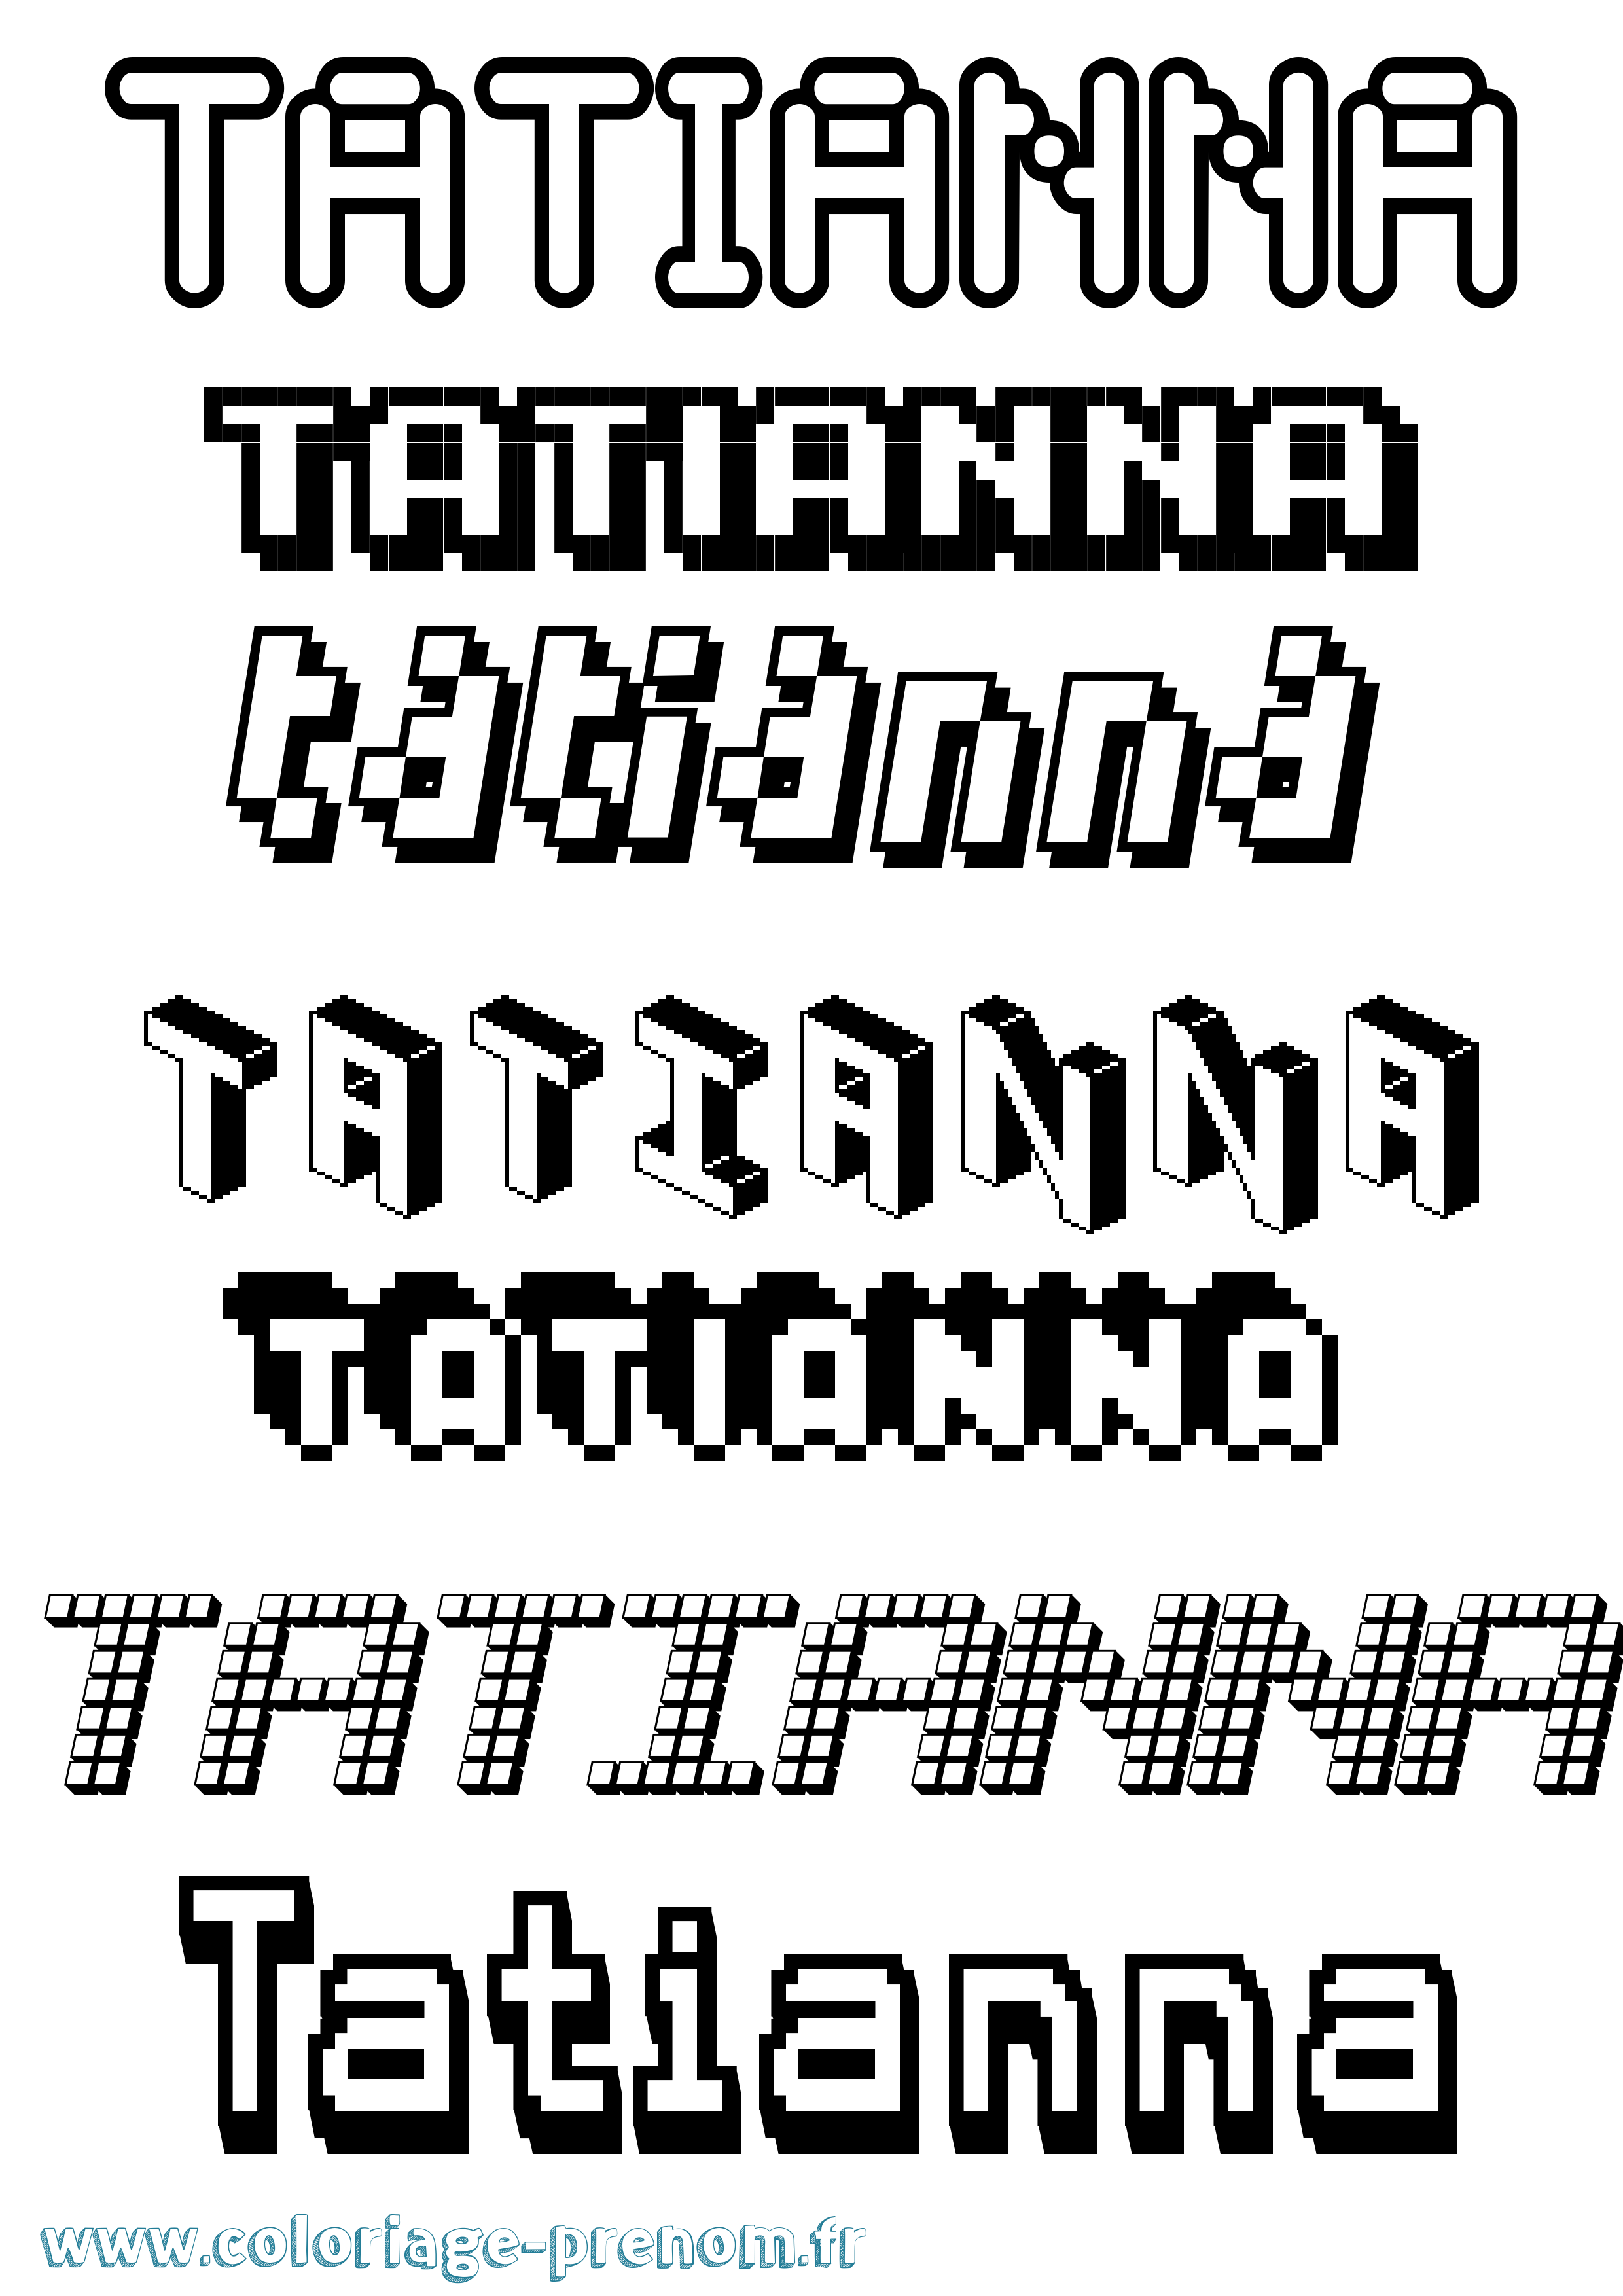 Coloriage prénom Tatianna Pixel